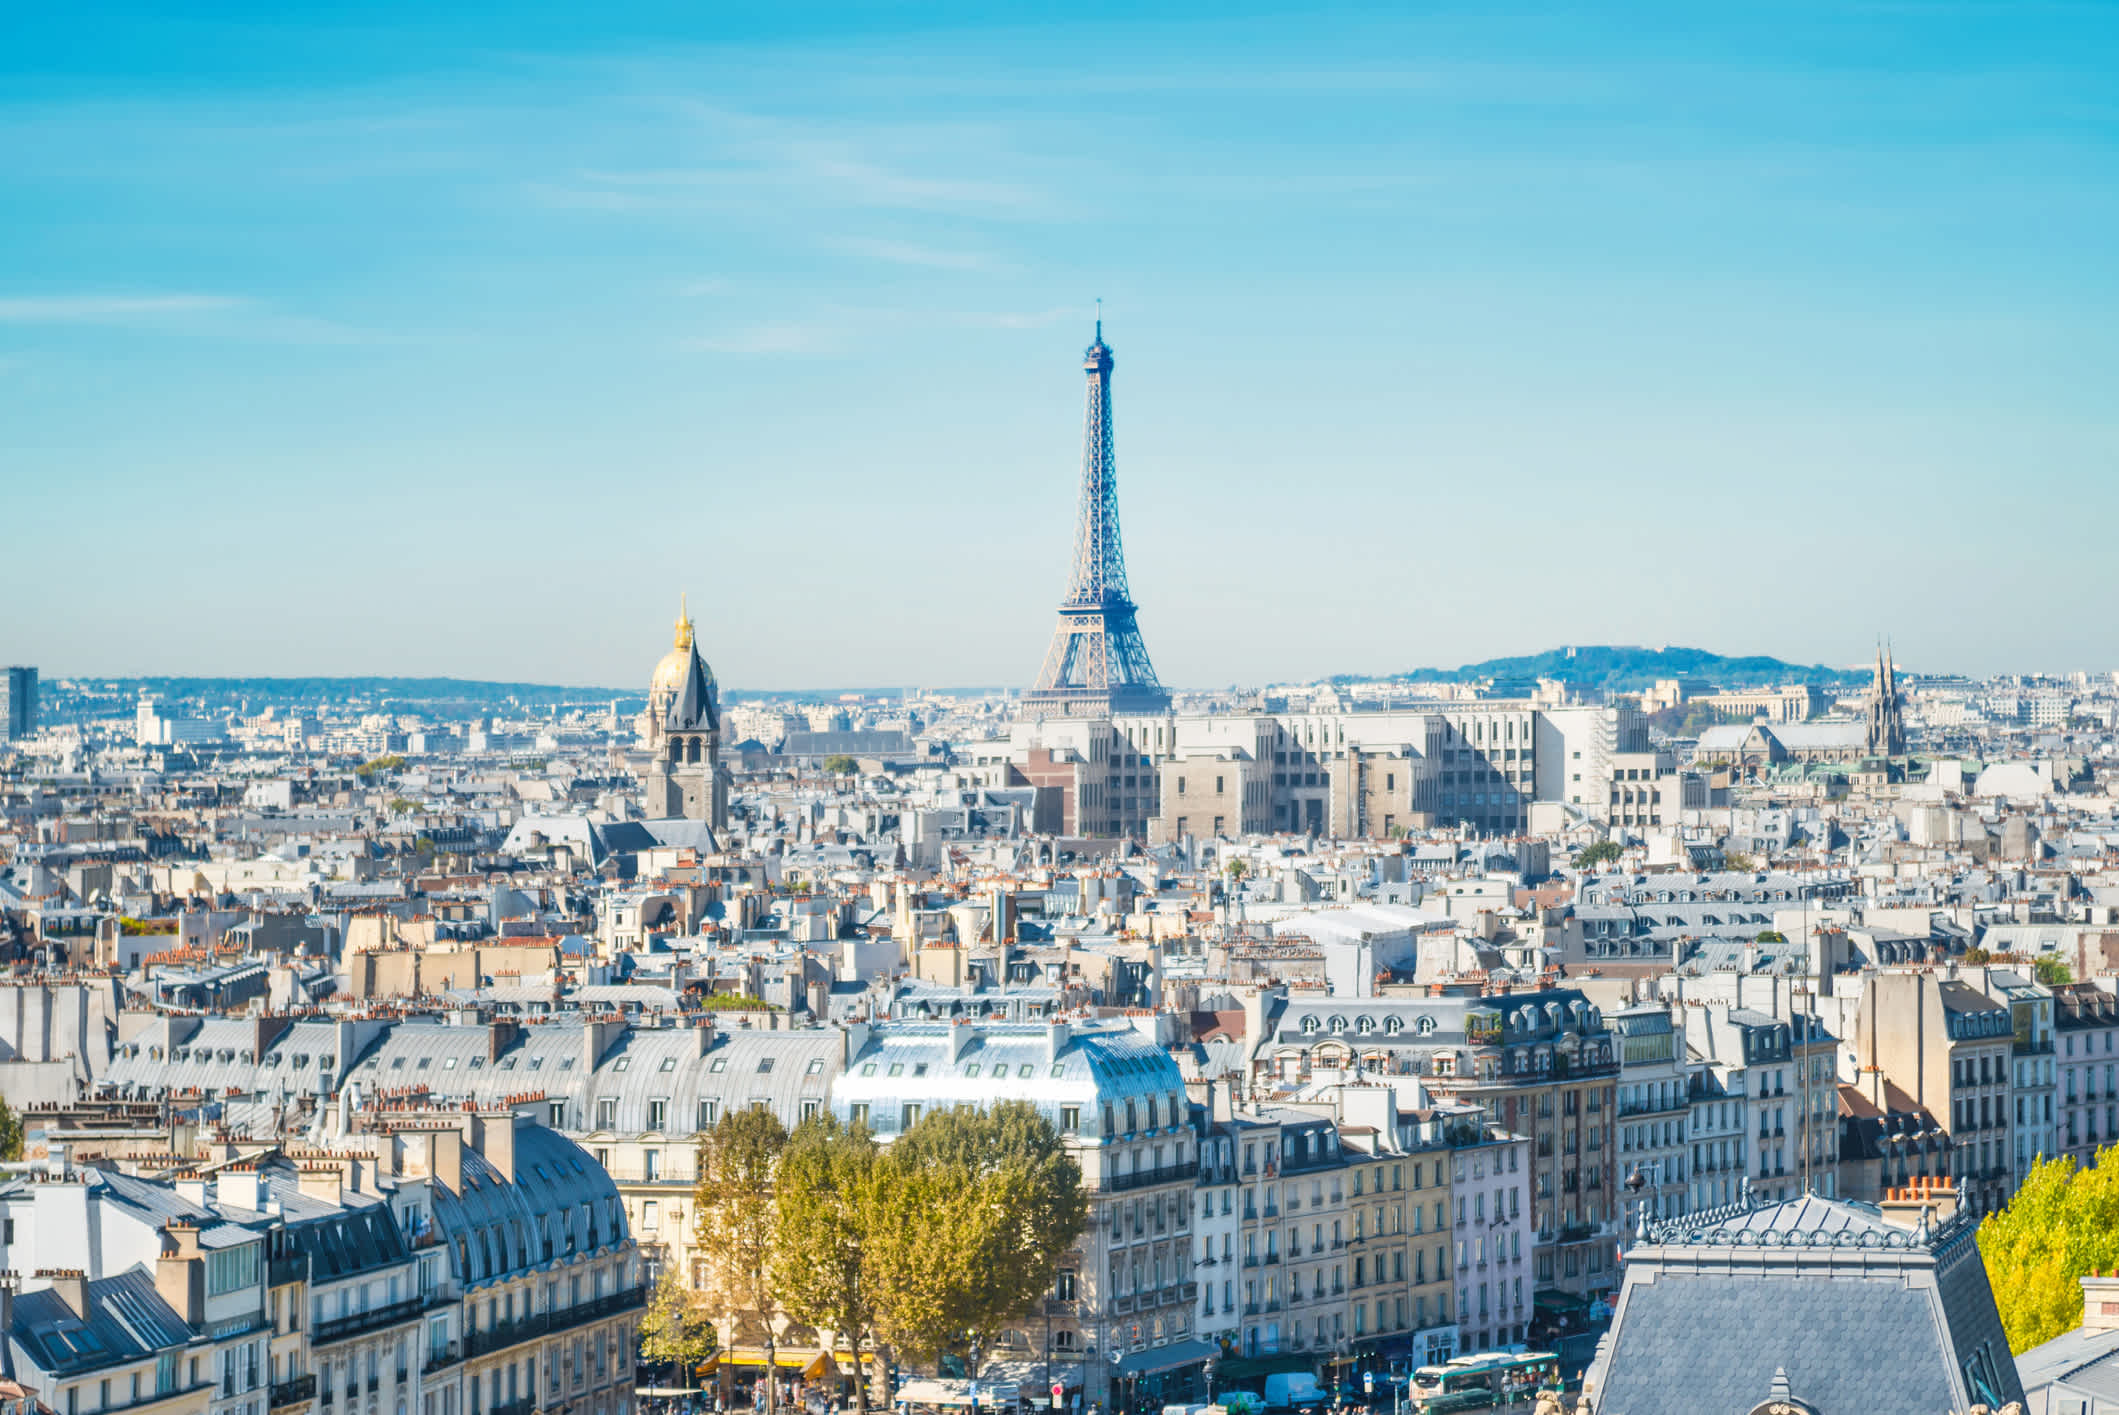 Vue de Paris avec la Tour Eiffel, France

